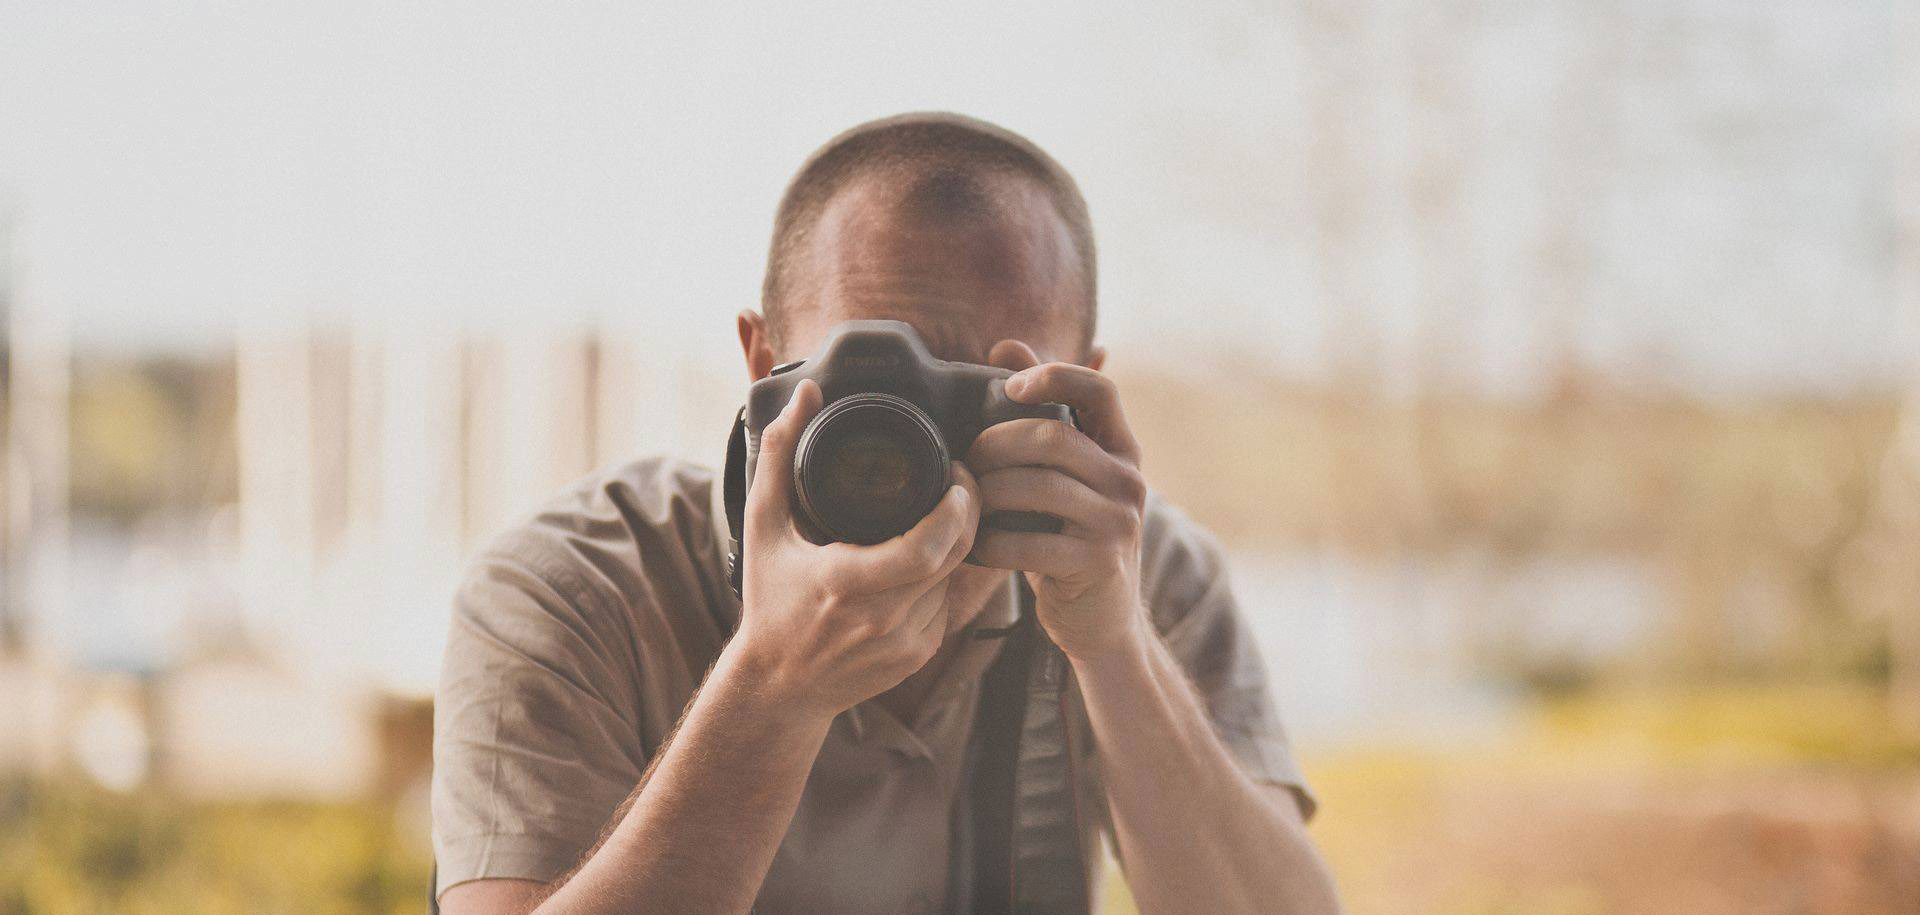 Ecole de photographie : l'intégrer sans le bac